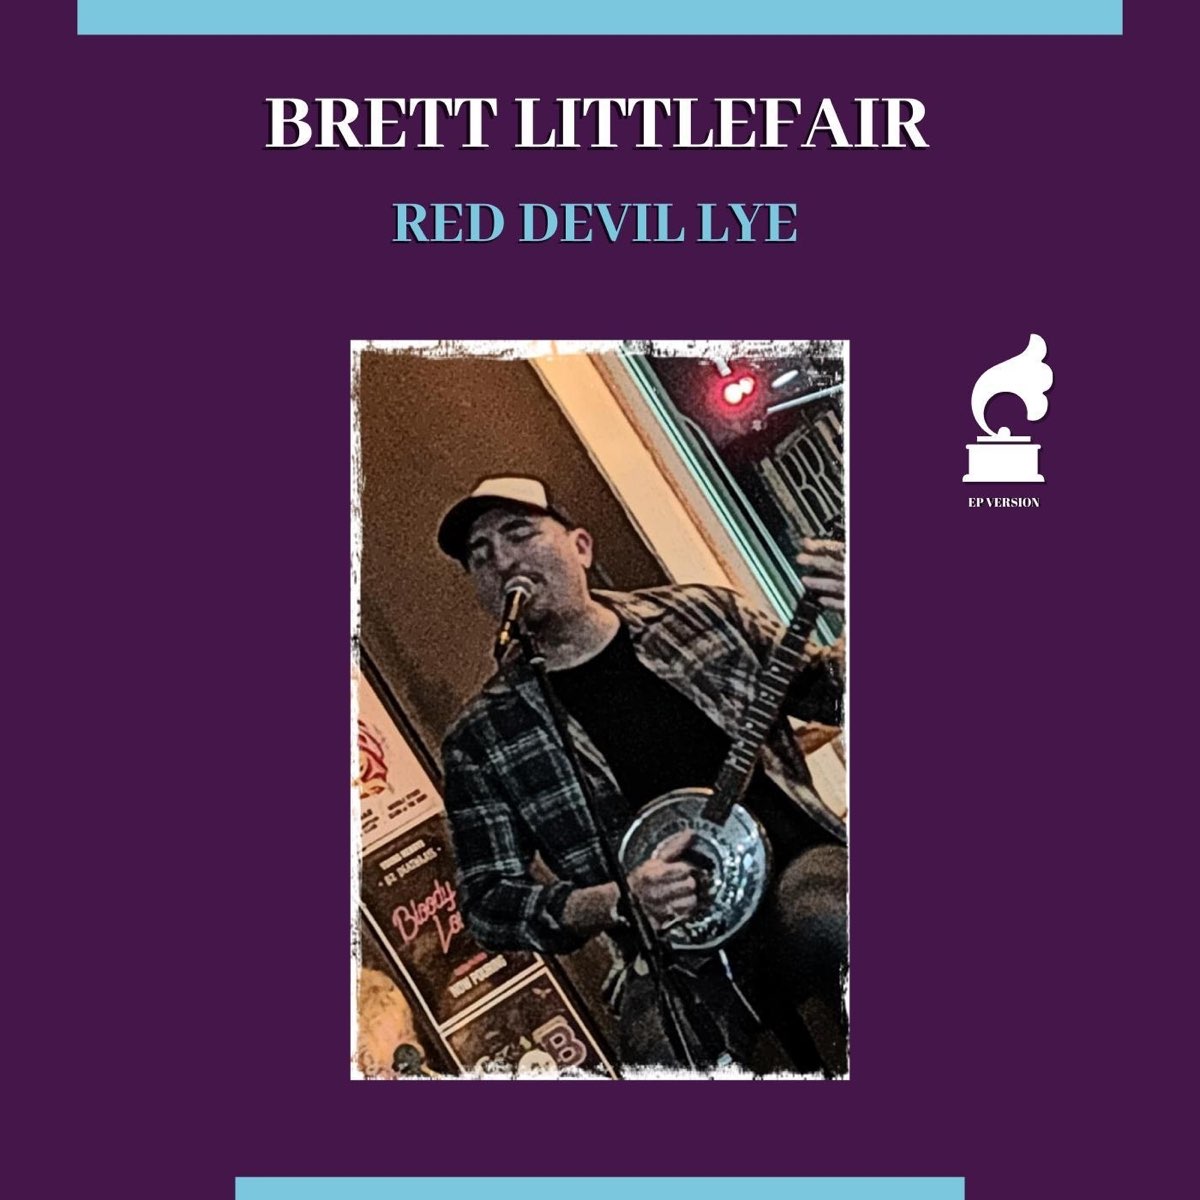 Red Devil Lye - EP - Album by Brett Littlefair - Apple Music